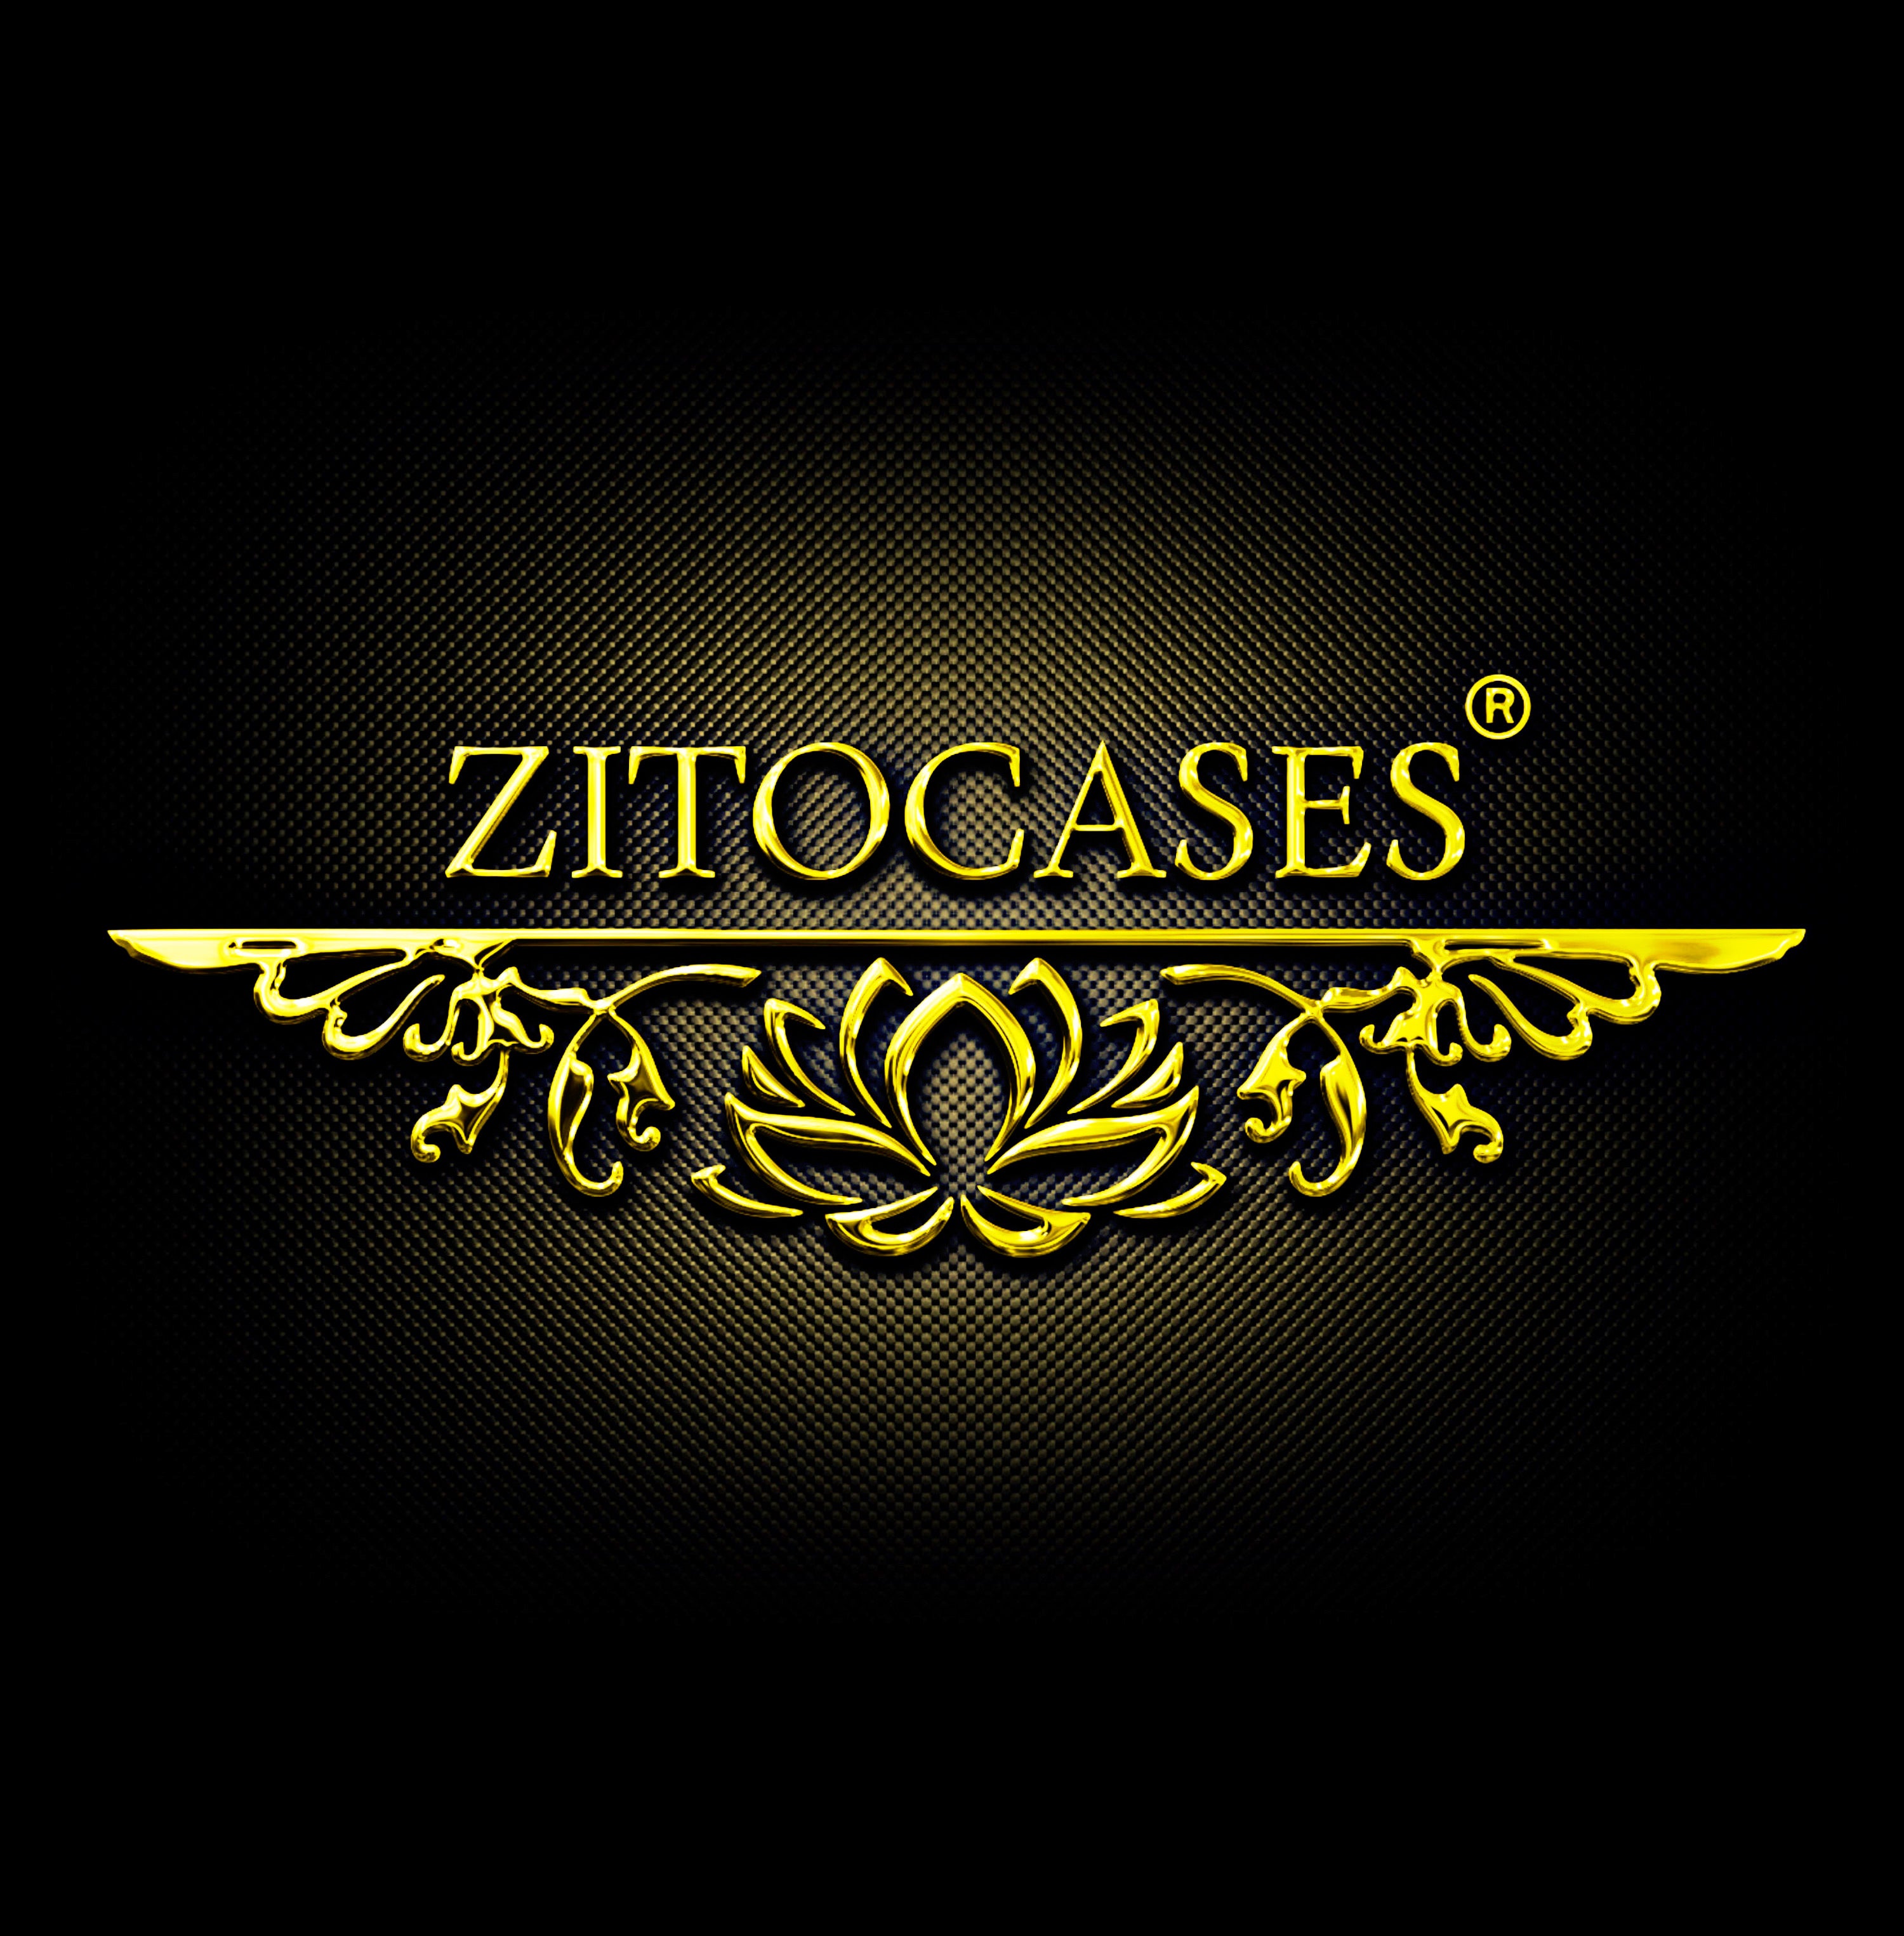 (c) Zitocases.com